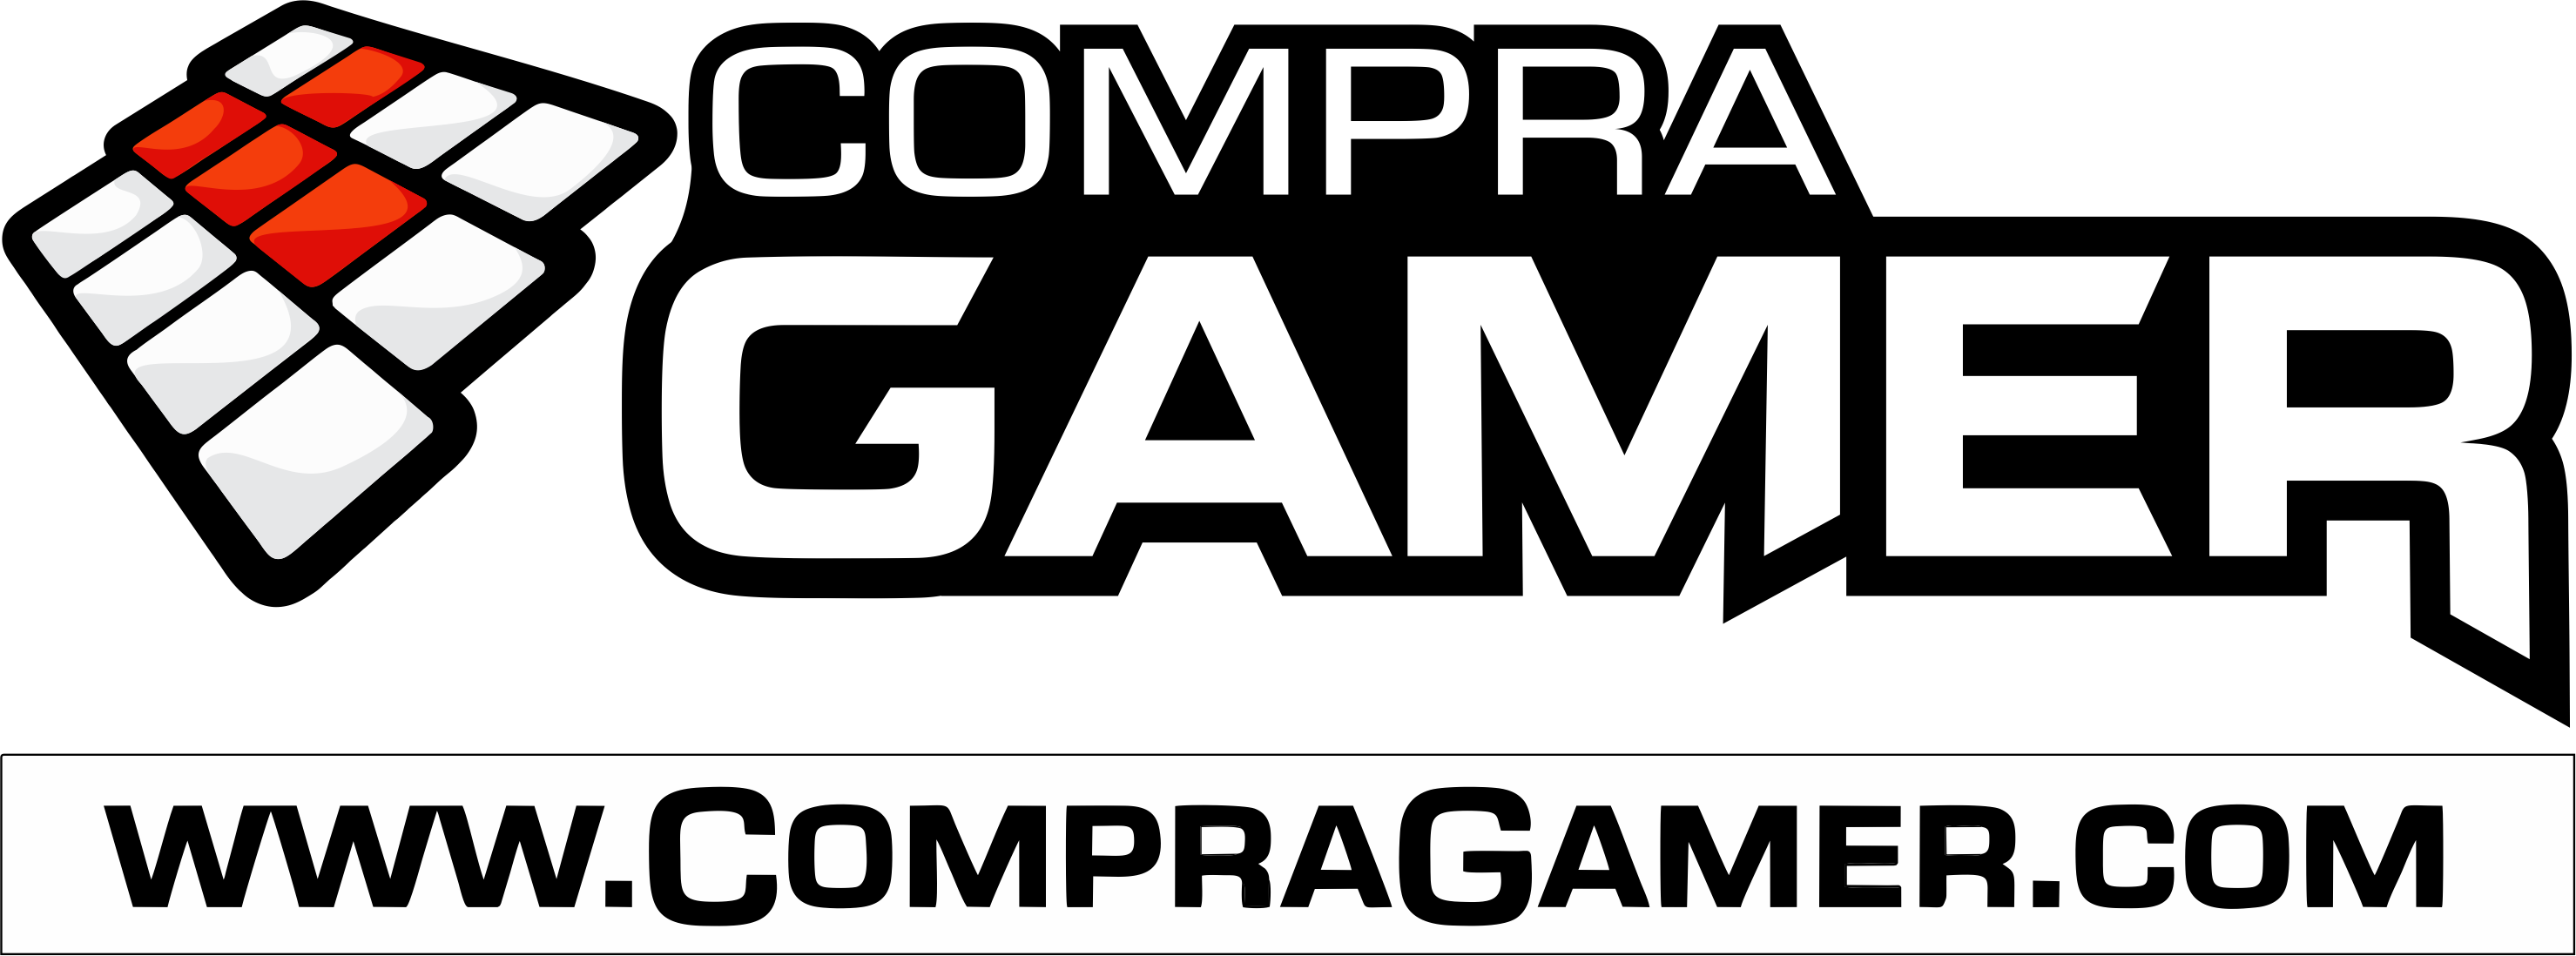 COMPRA GAMER  Compra Gamer